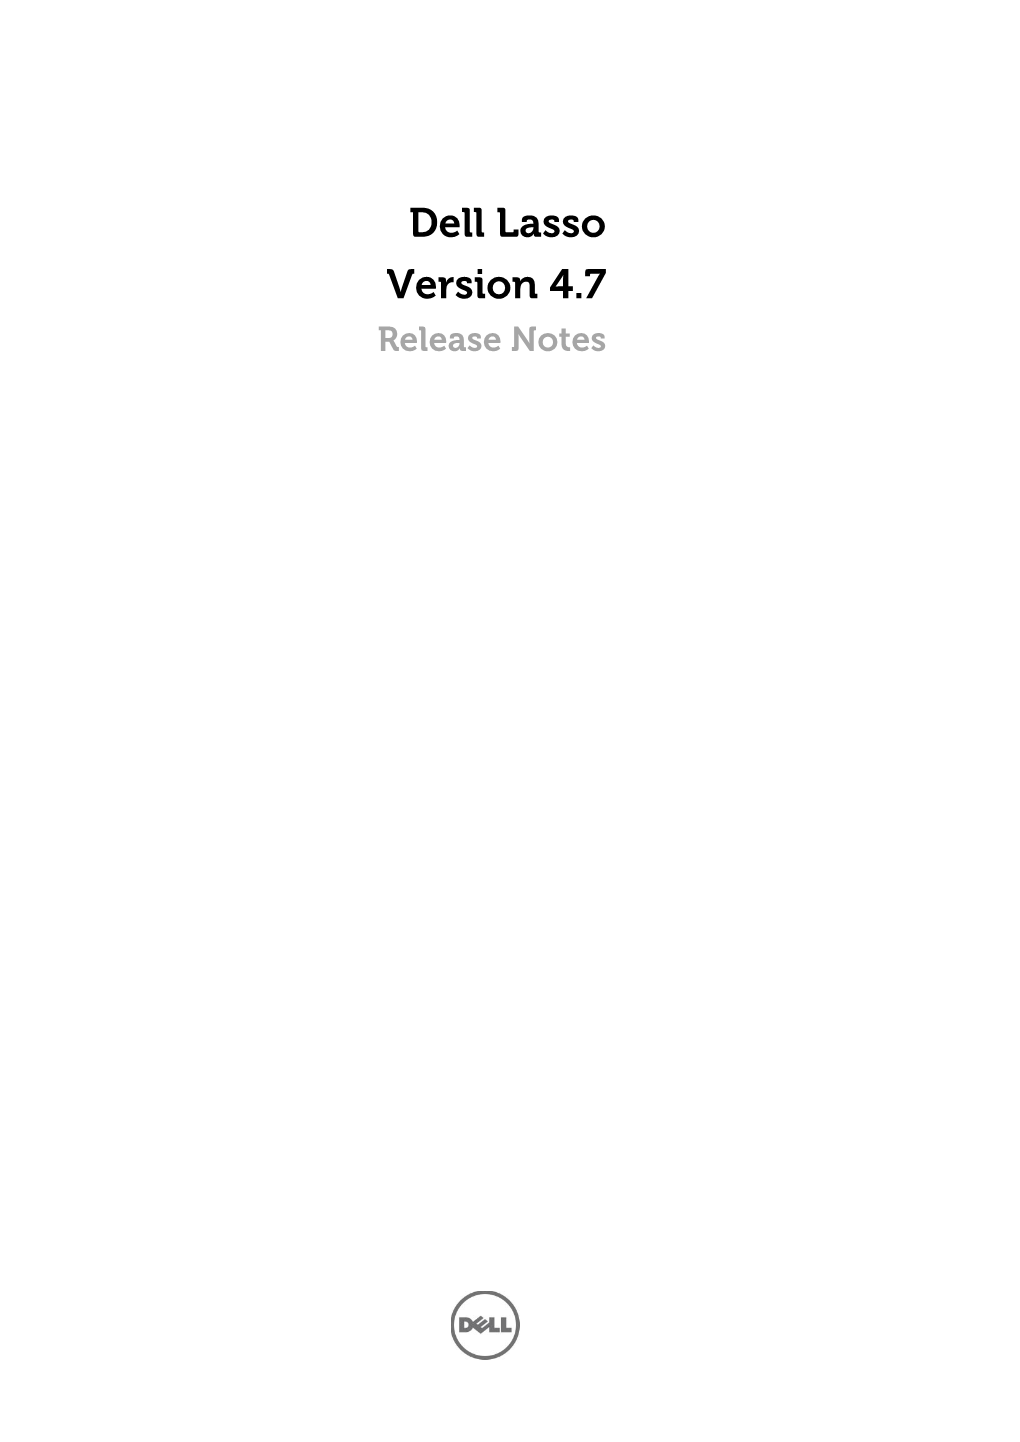 Dell Lasso Version 4.7 Release Notes